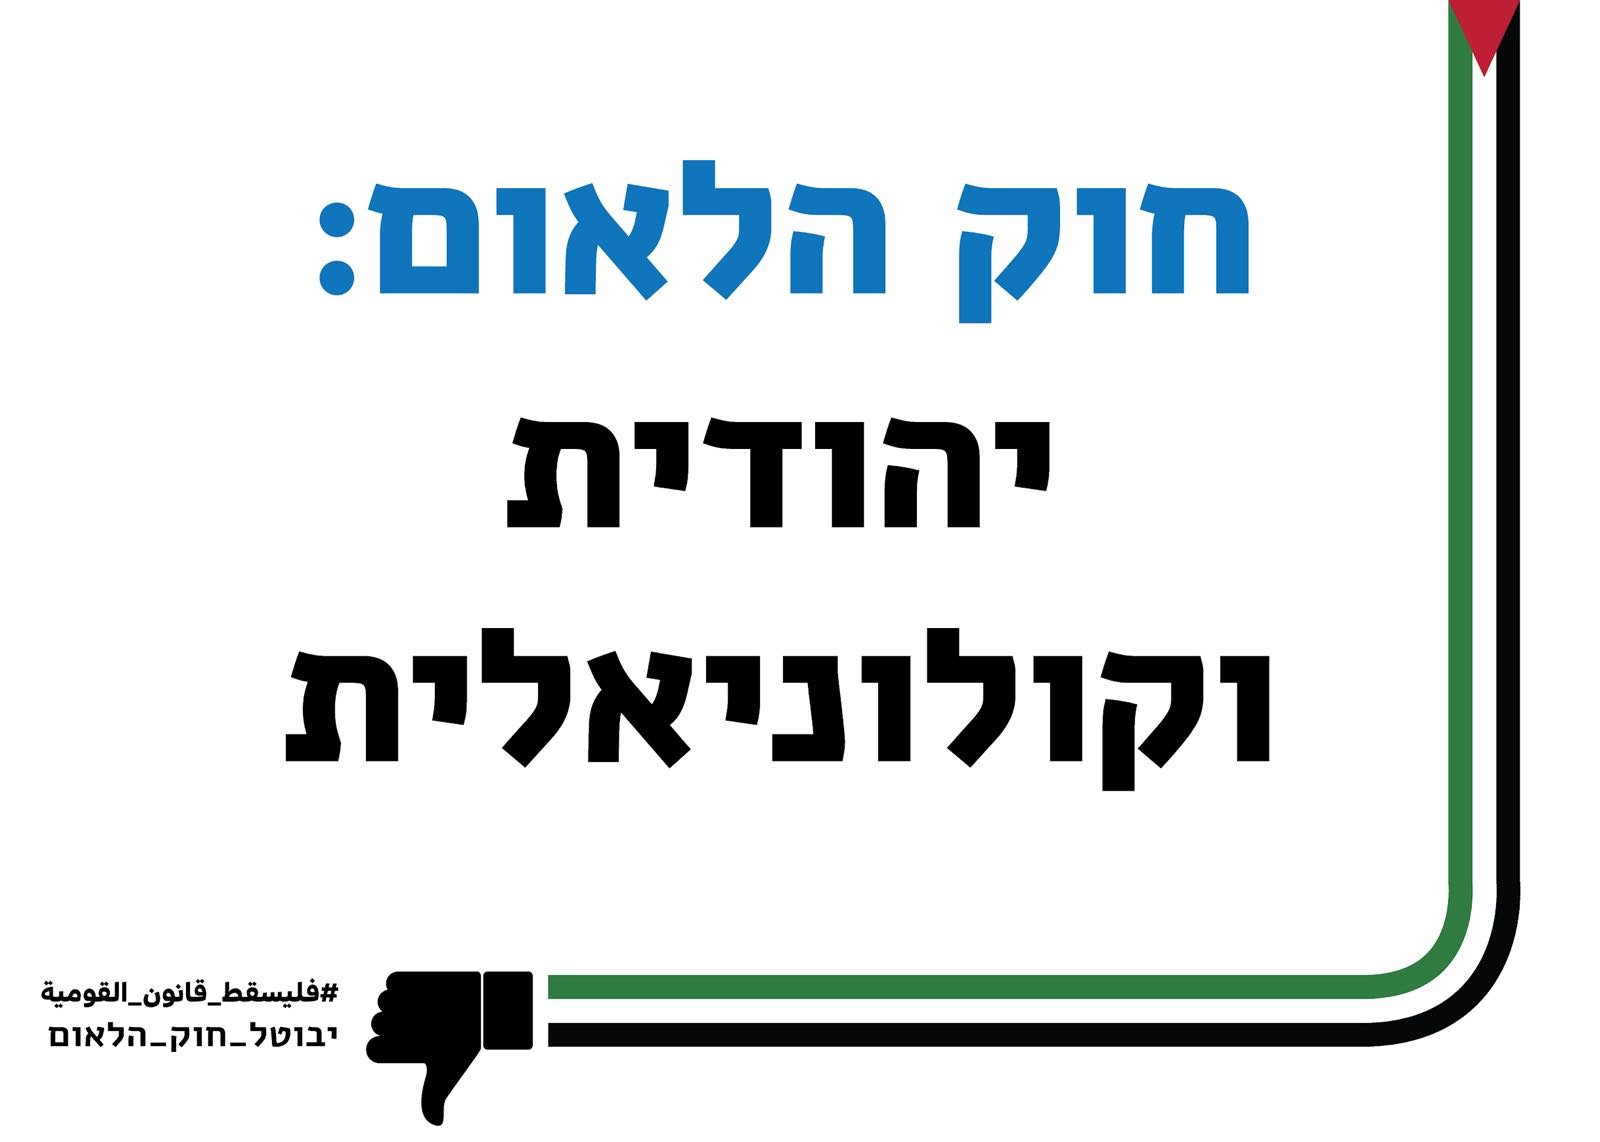 سياسيون ونواب يهود يناشدون زملائهم للمشاركة في تظاهرة اليوم -6